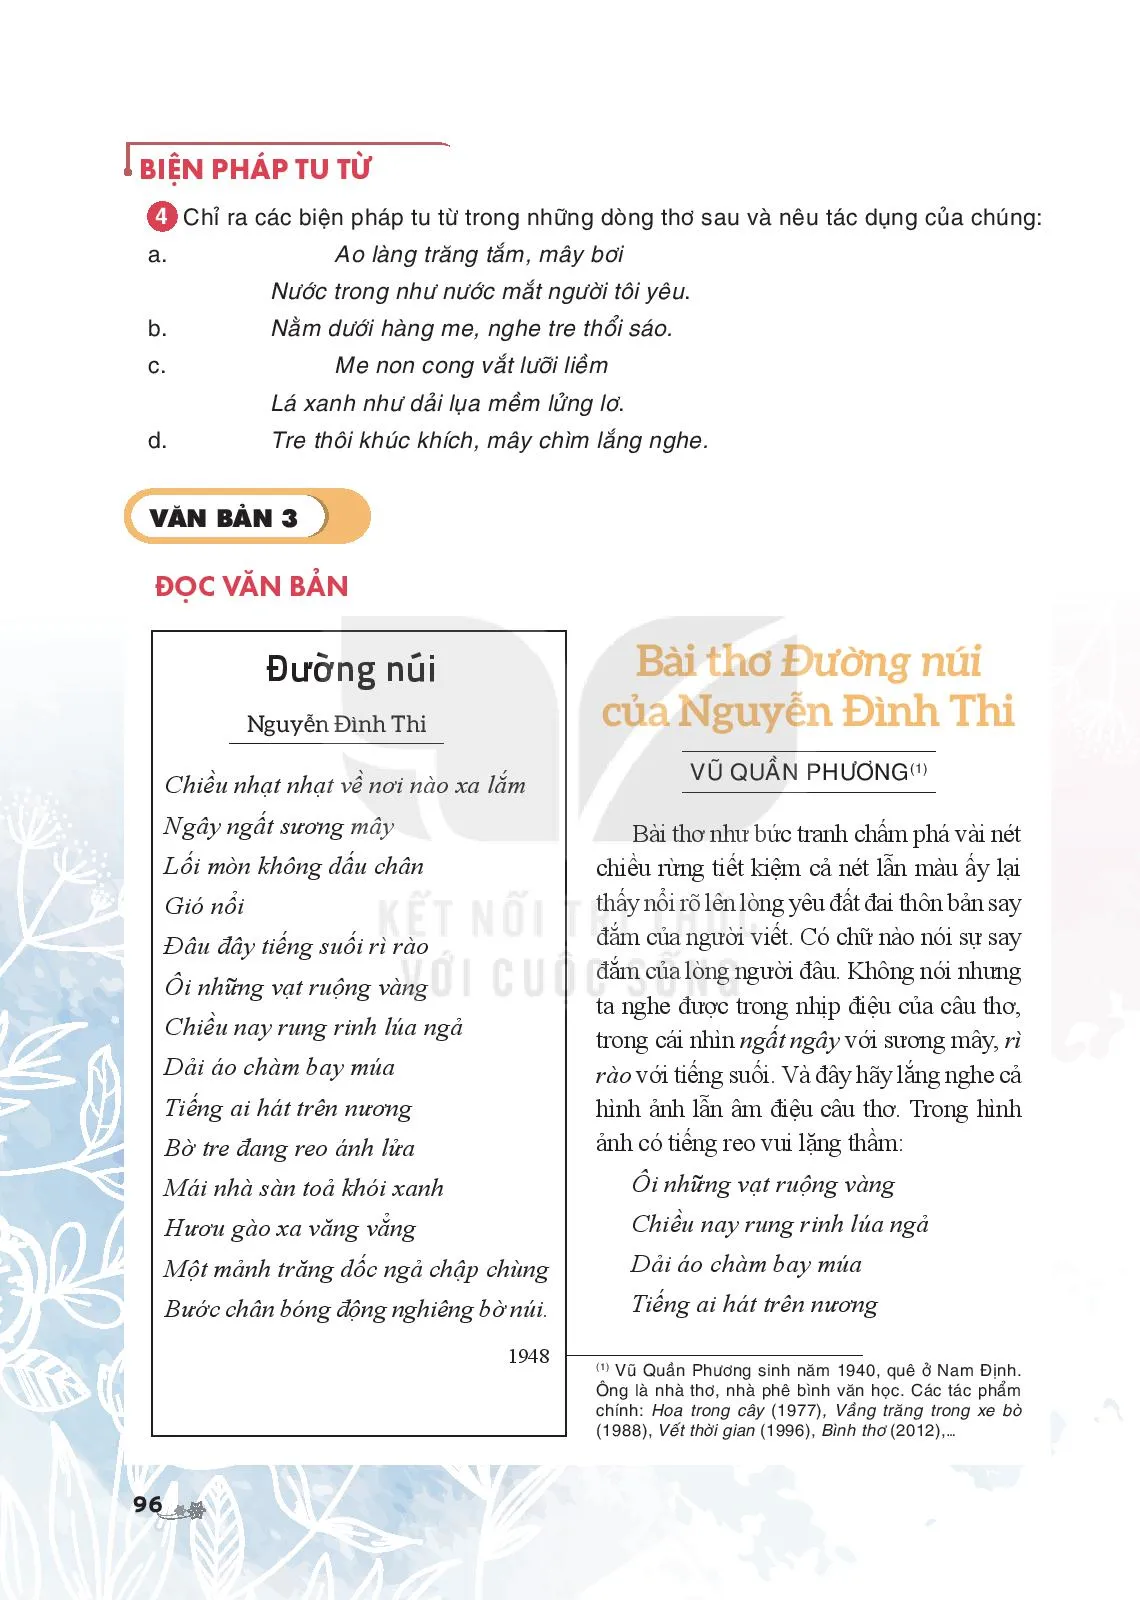 Bài thơ “Đường núi” của Nguyễn Đình Thi (Vũ Quần Phương)